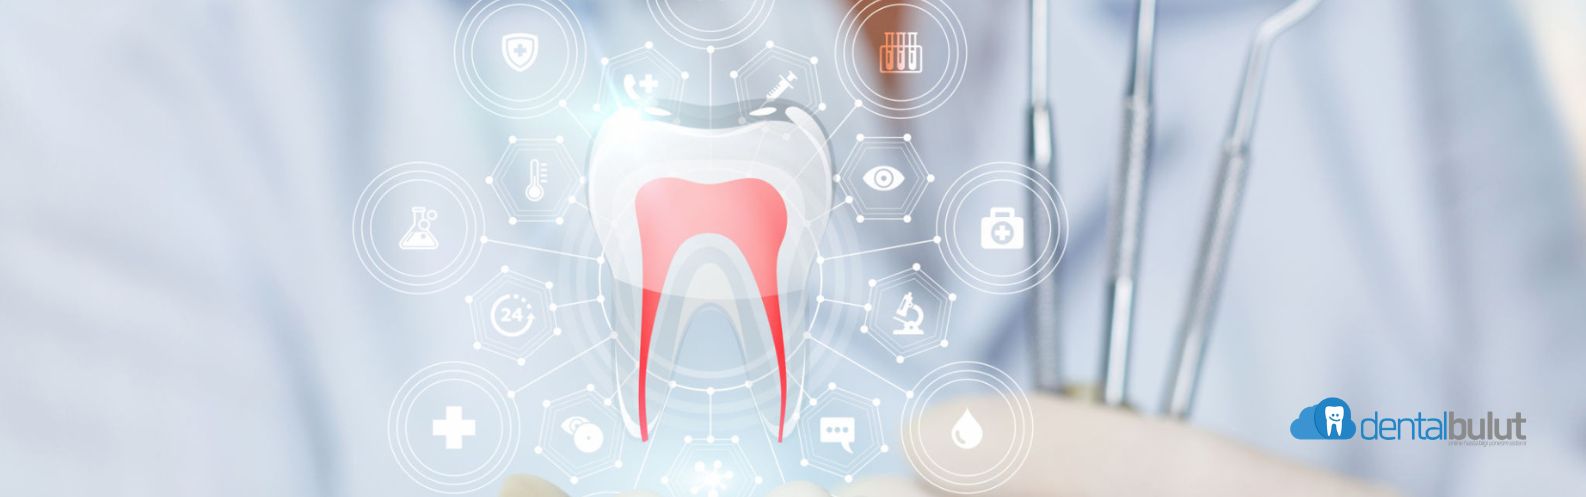 Diş Klinikleri için VERBİS Kaydı Nasıl Yapılır?